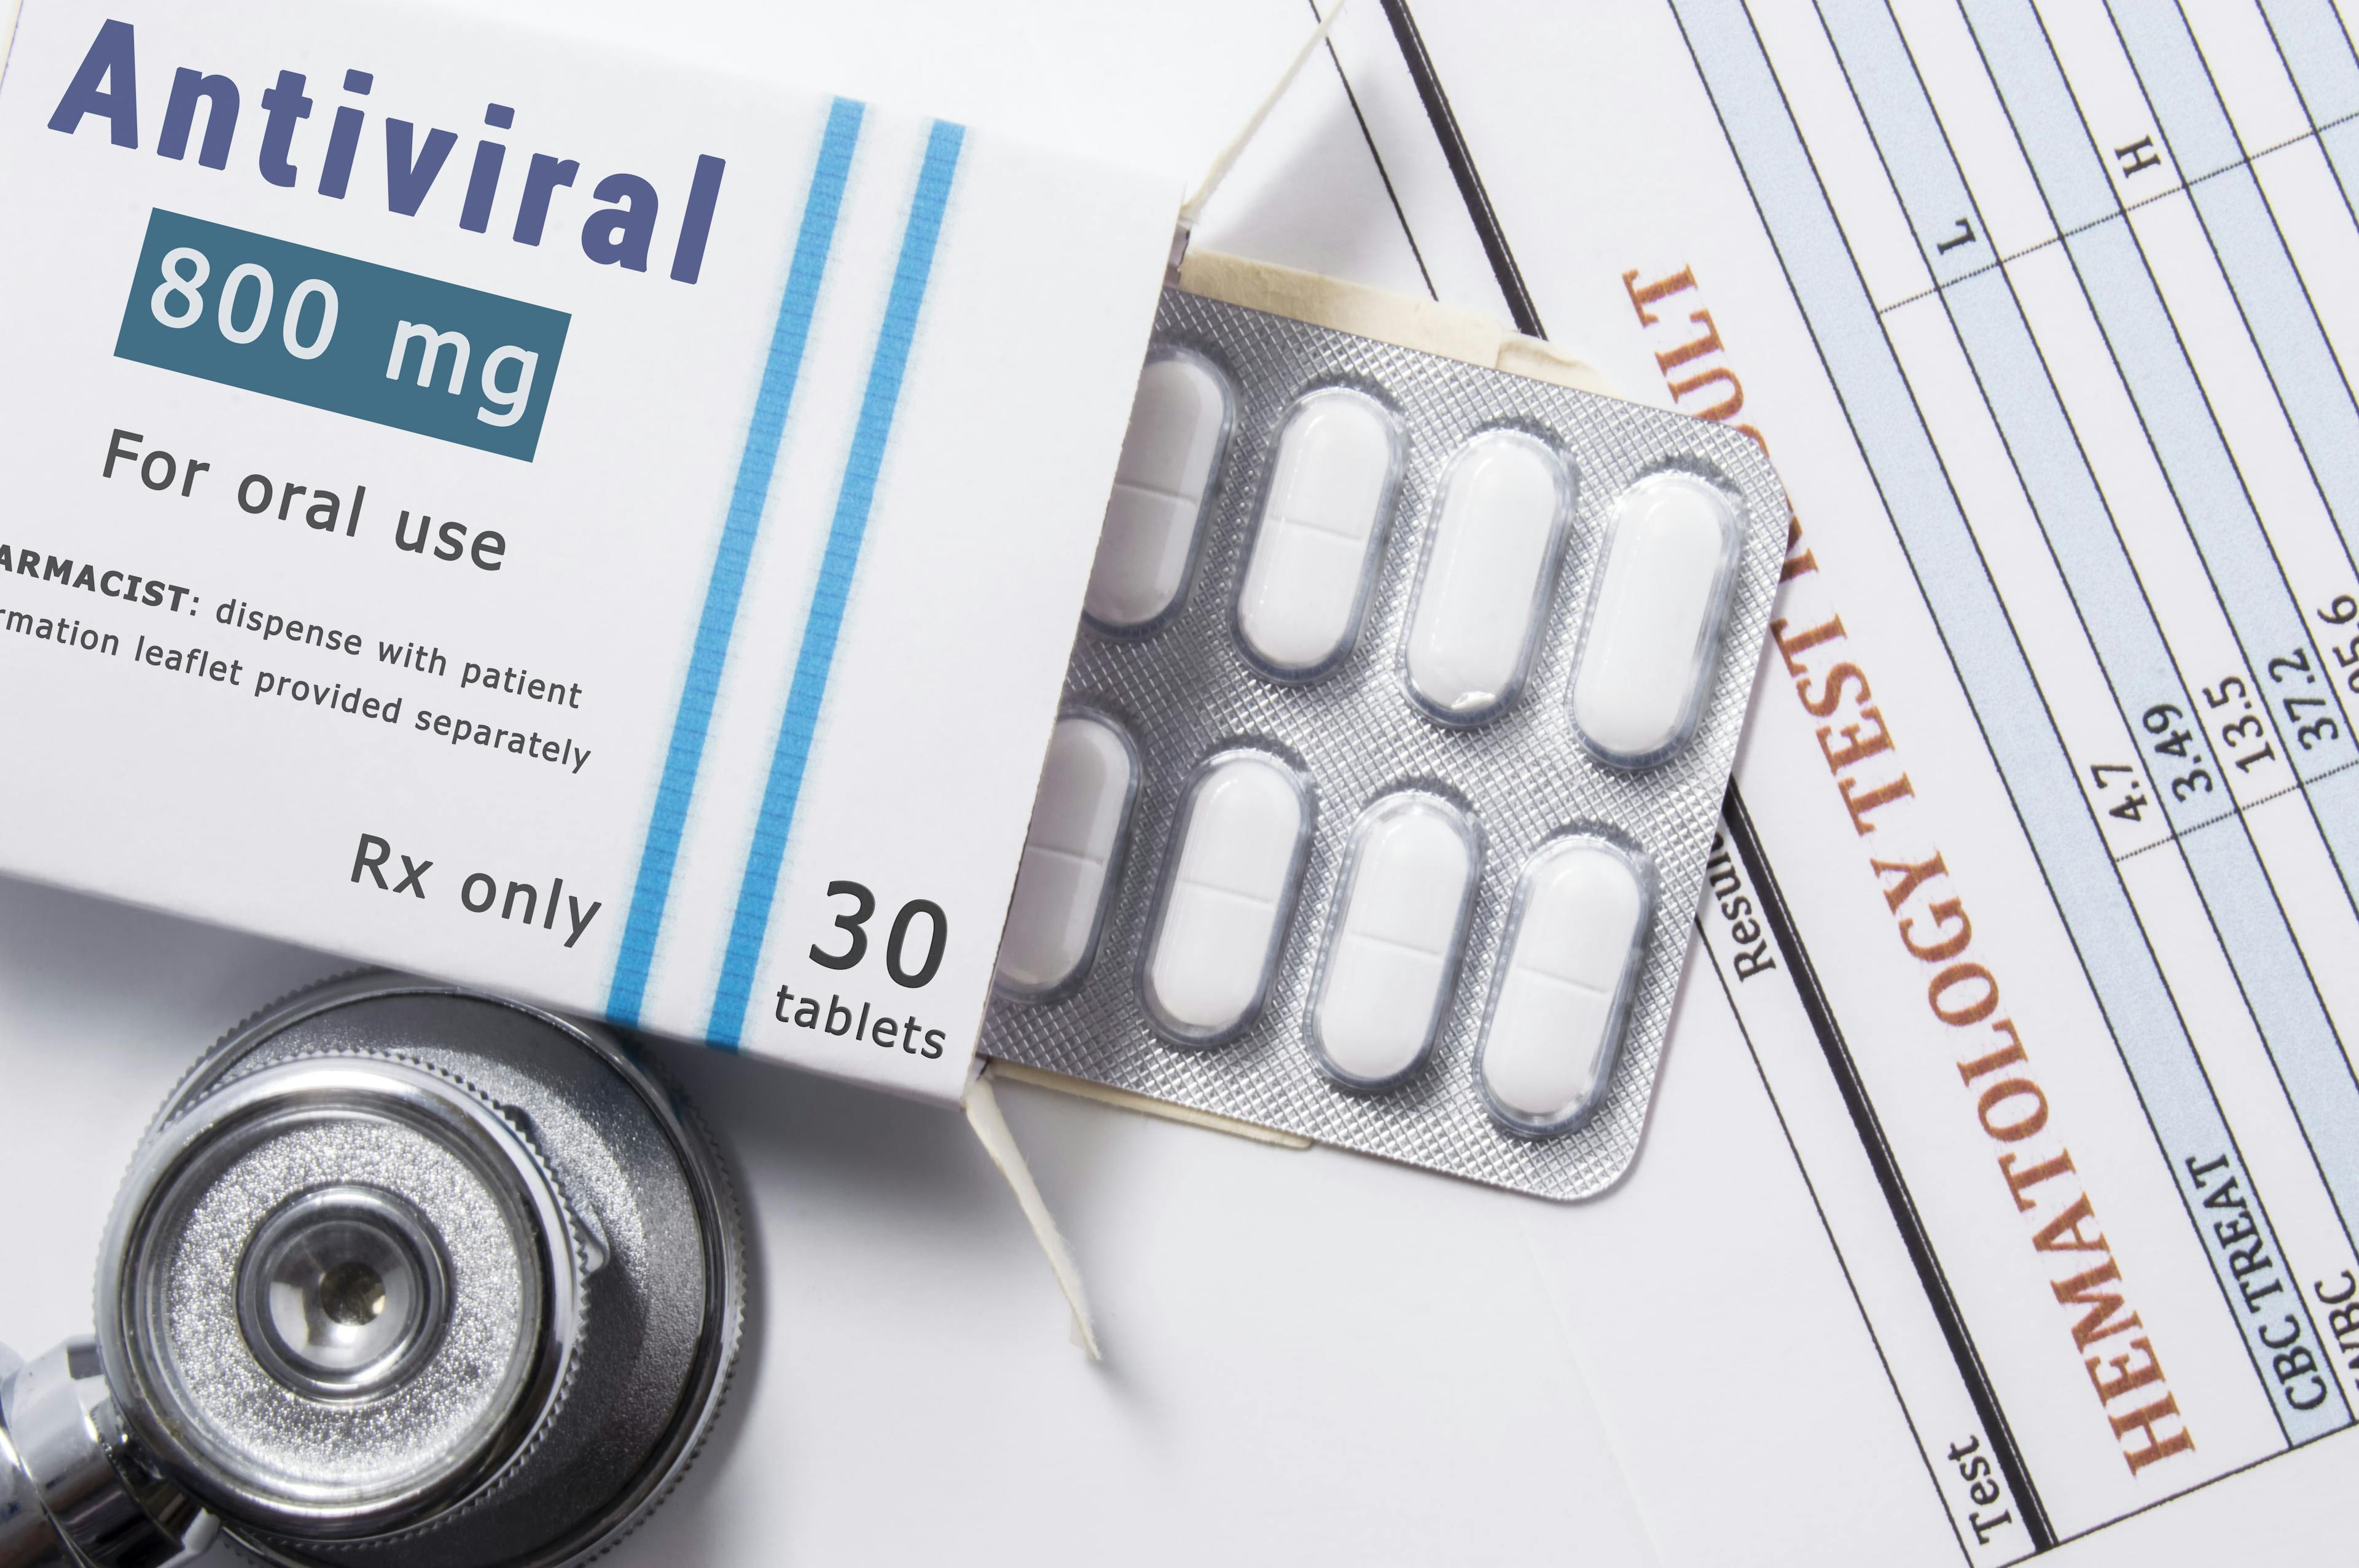 Antiviral oral drug -- Image credit: shidlovski | stock.adobe.com